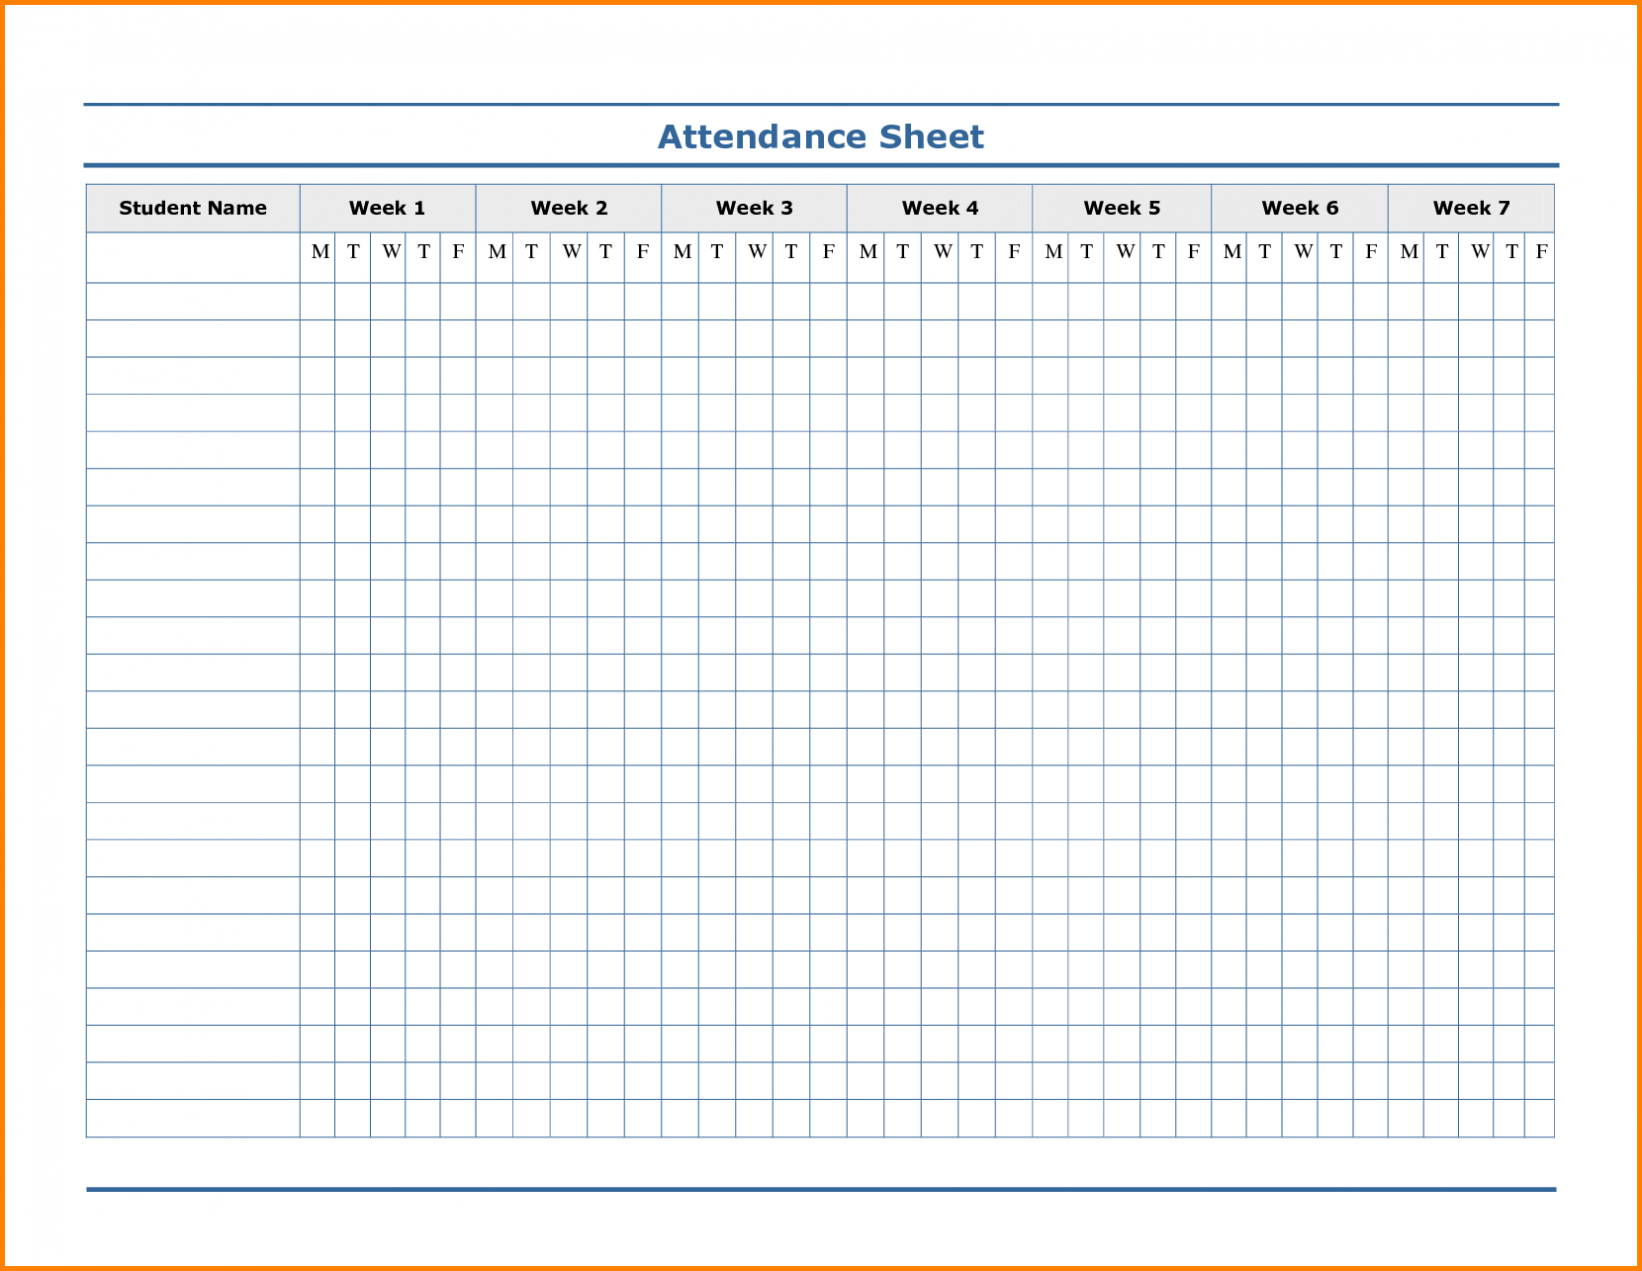 Employee Attendance Calendar Template